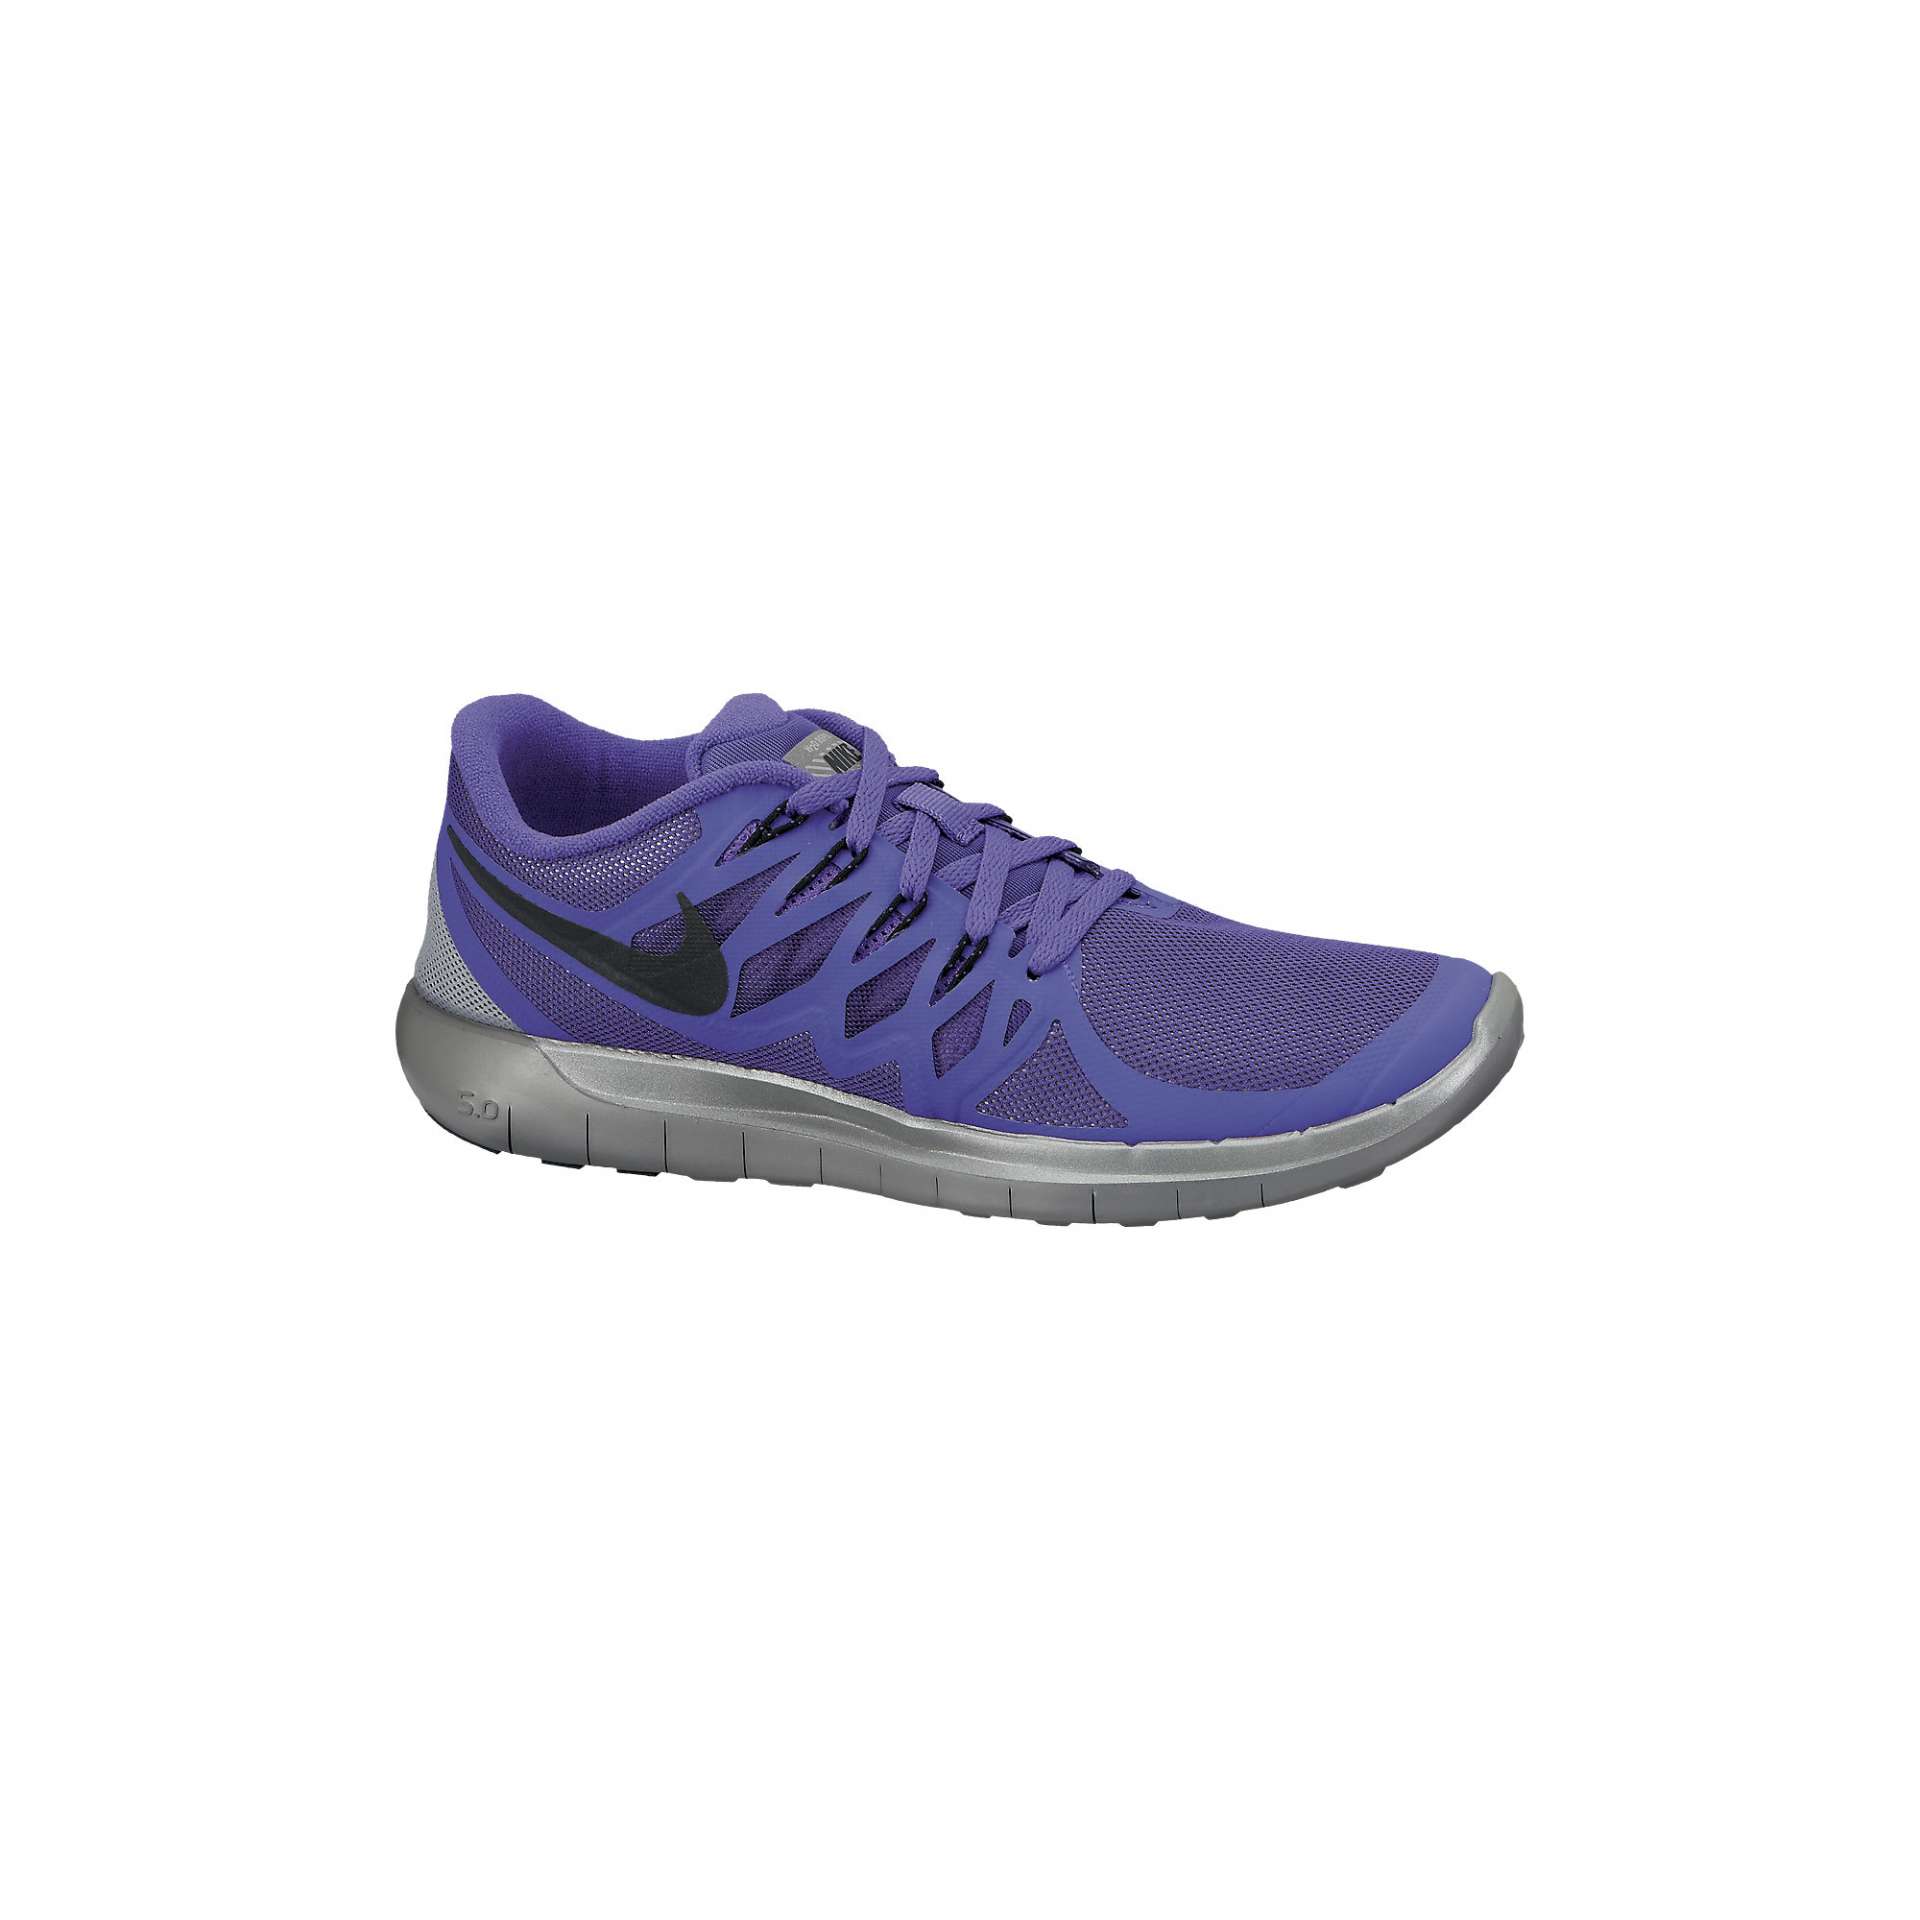 Prijs toezicht houden op Leuk vinden Nike Free 5.0 Flash Hardloopschoenen Paars/Grijs Dames koop je bij  Futurumshop.nl